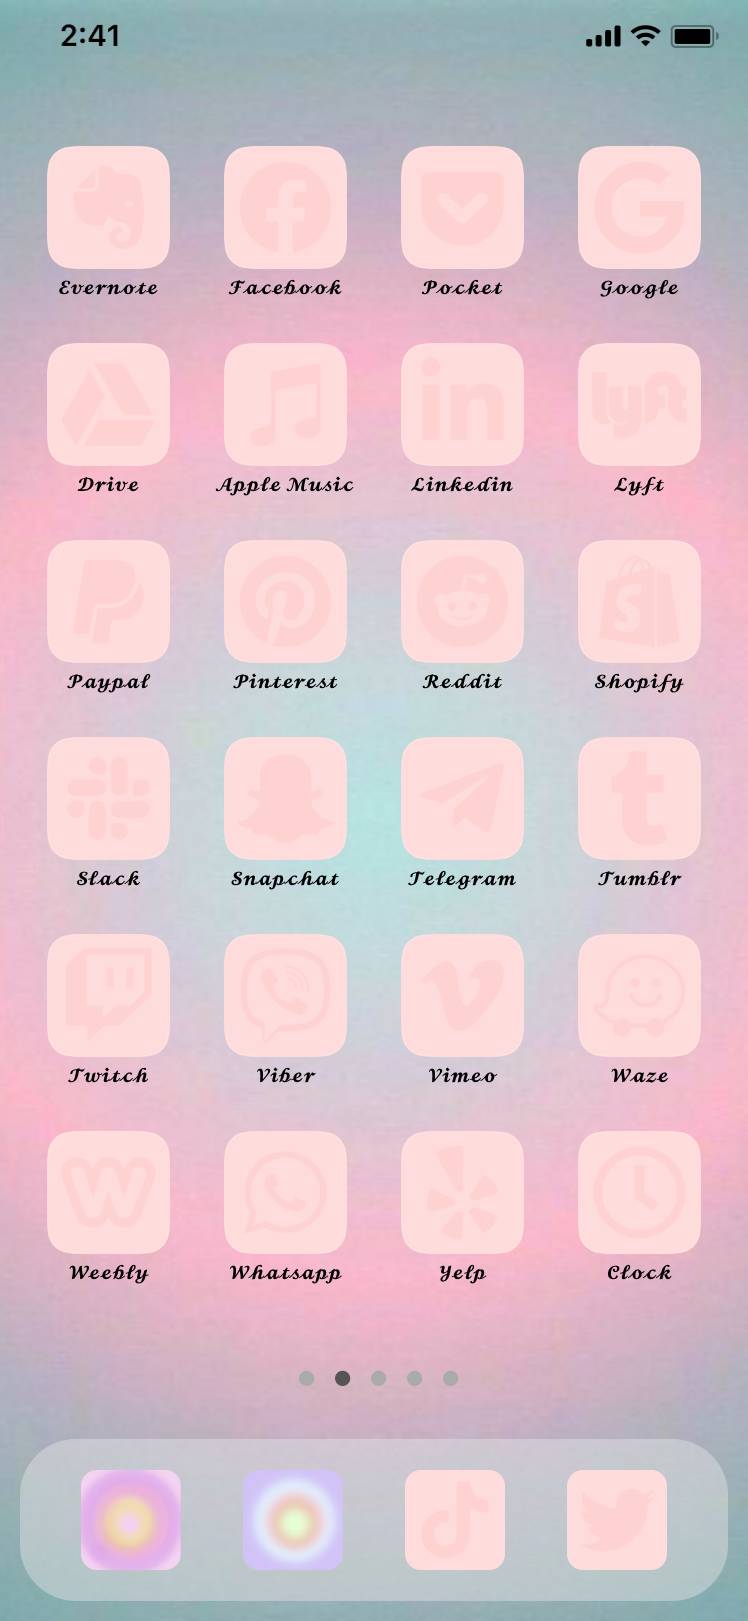 pink cool niceИдеје за почетни екран[5gcT7oJ2JrullnFNuobQ]